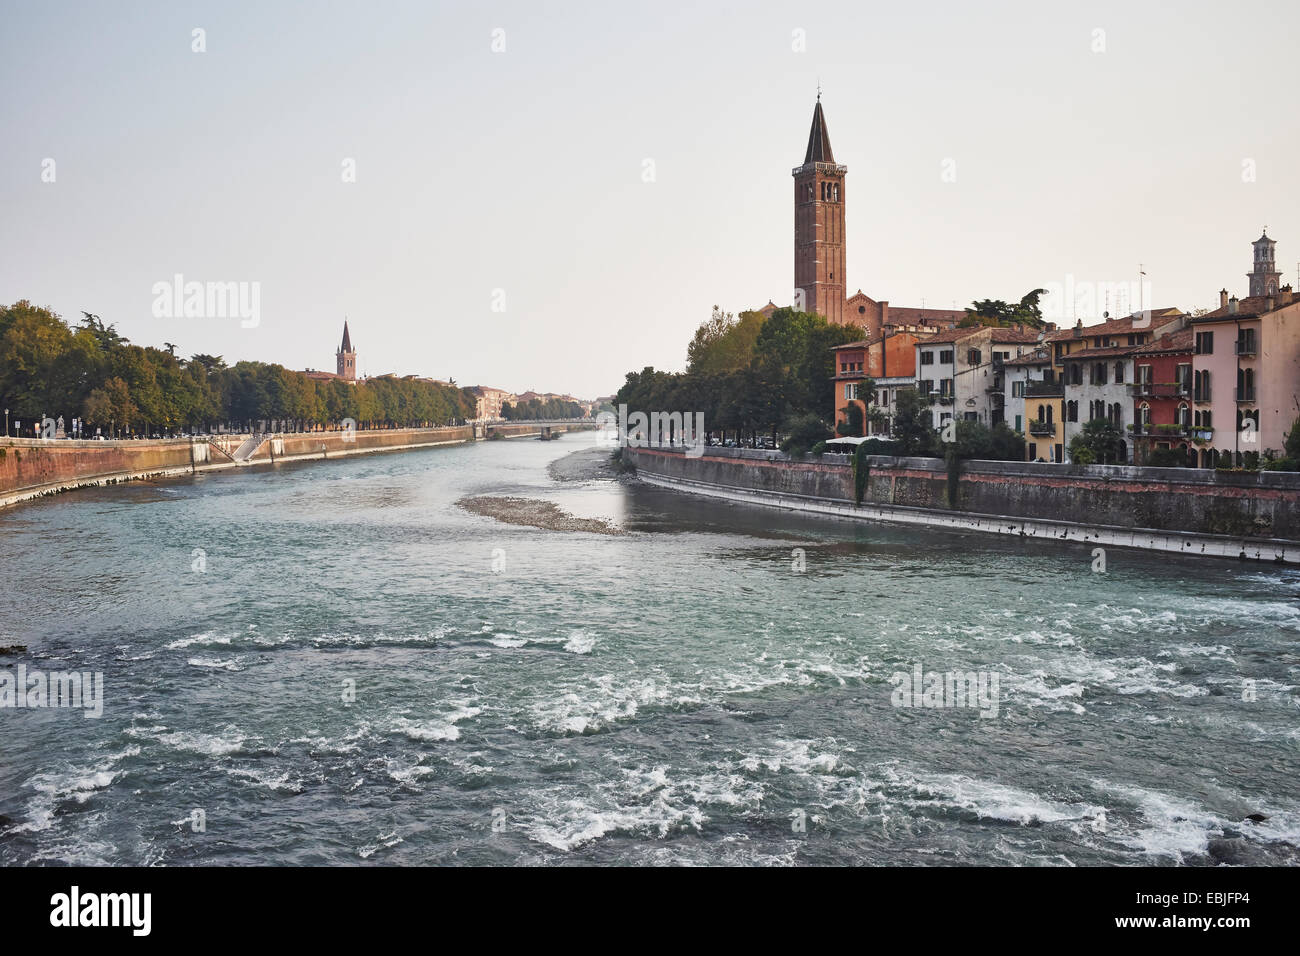 Adige River and cityscape, Verona, Italy Stock Photo